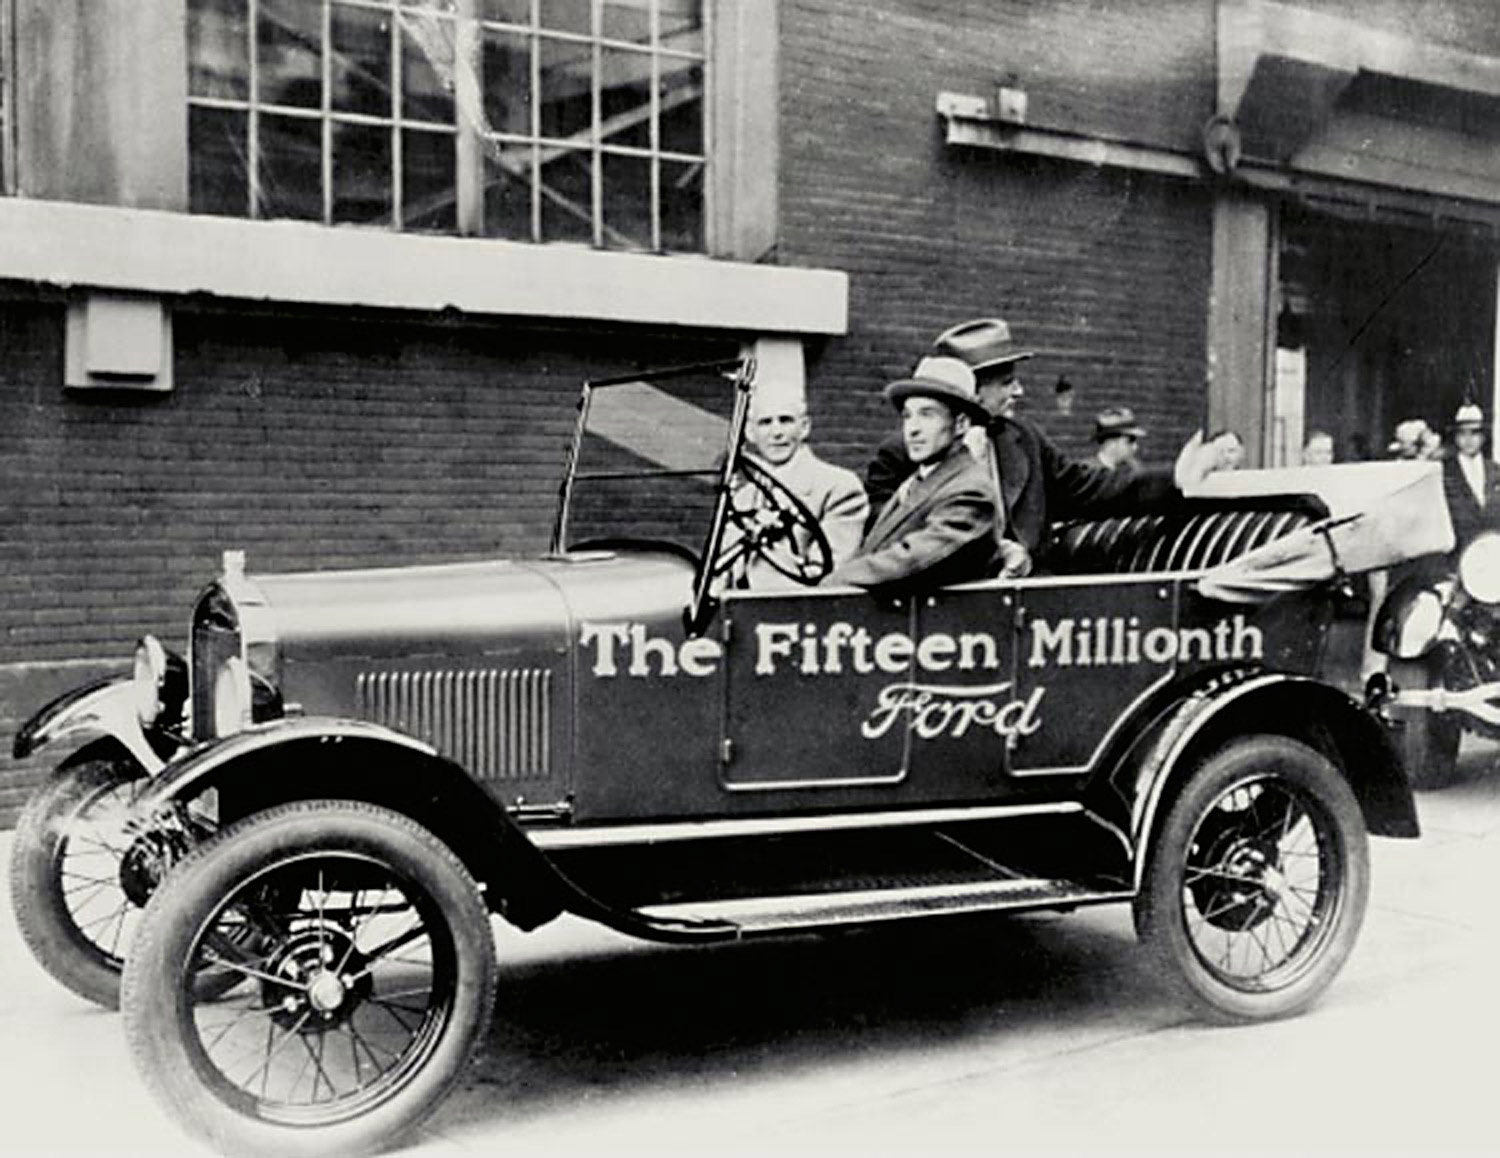 Эдсел Форд вывозит своего отца Генри с завода Форд-Хайленд-Парк на самой последней из когда-либо созданных моделей &laquo;Т&raquo;&nbsp;&mdash; модели 111